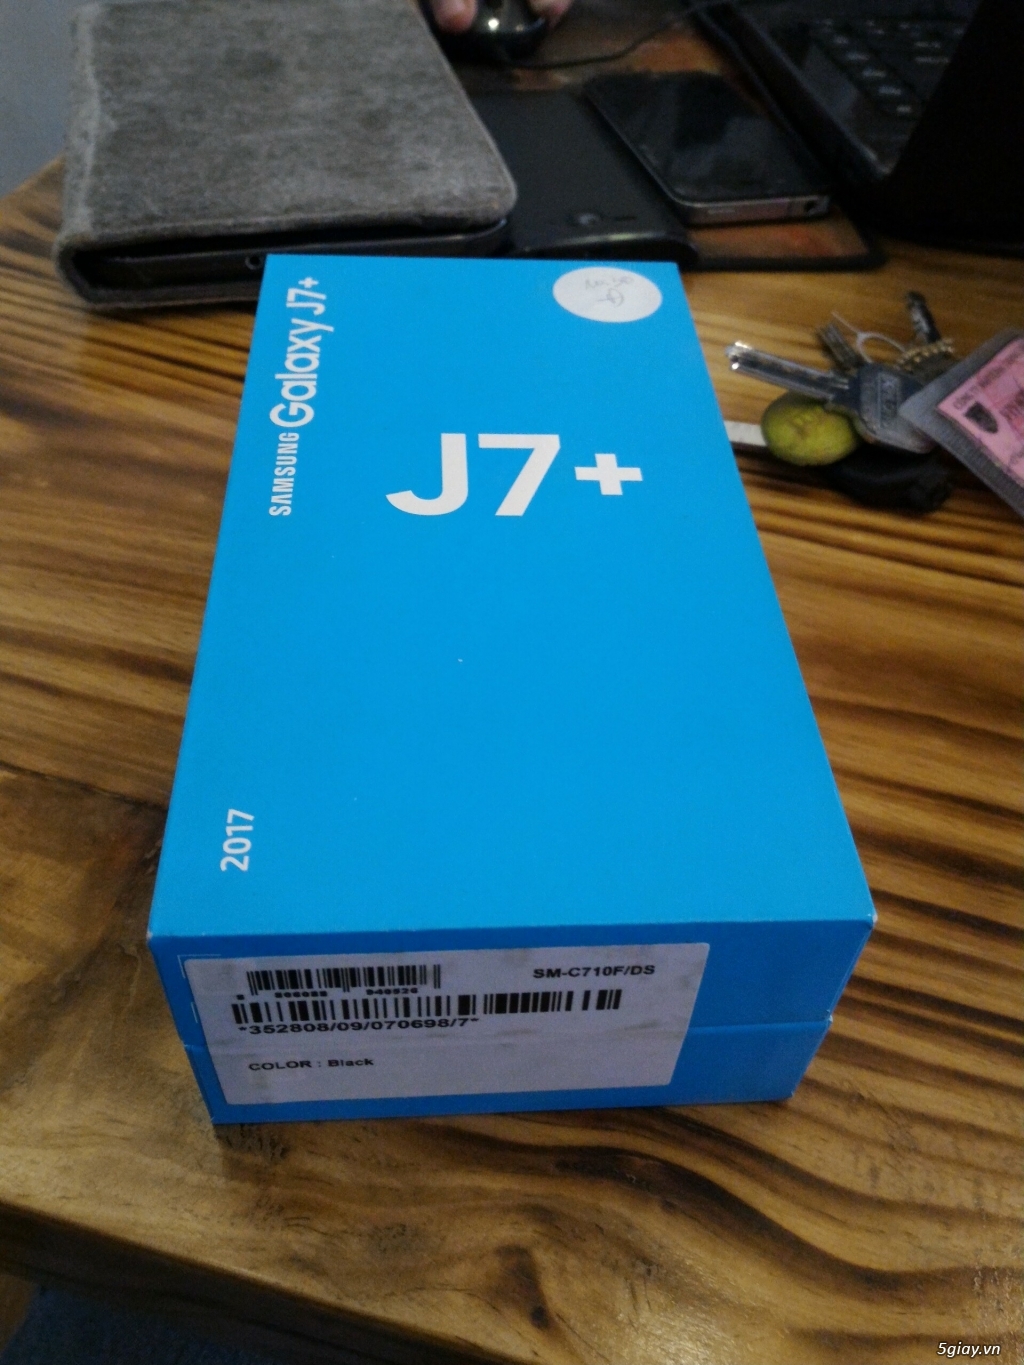 Samsung j7 plus mới mua còn nguyên seal 100% còn bảo hành chính hãng. - 2